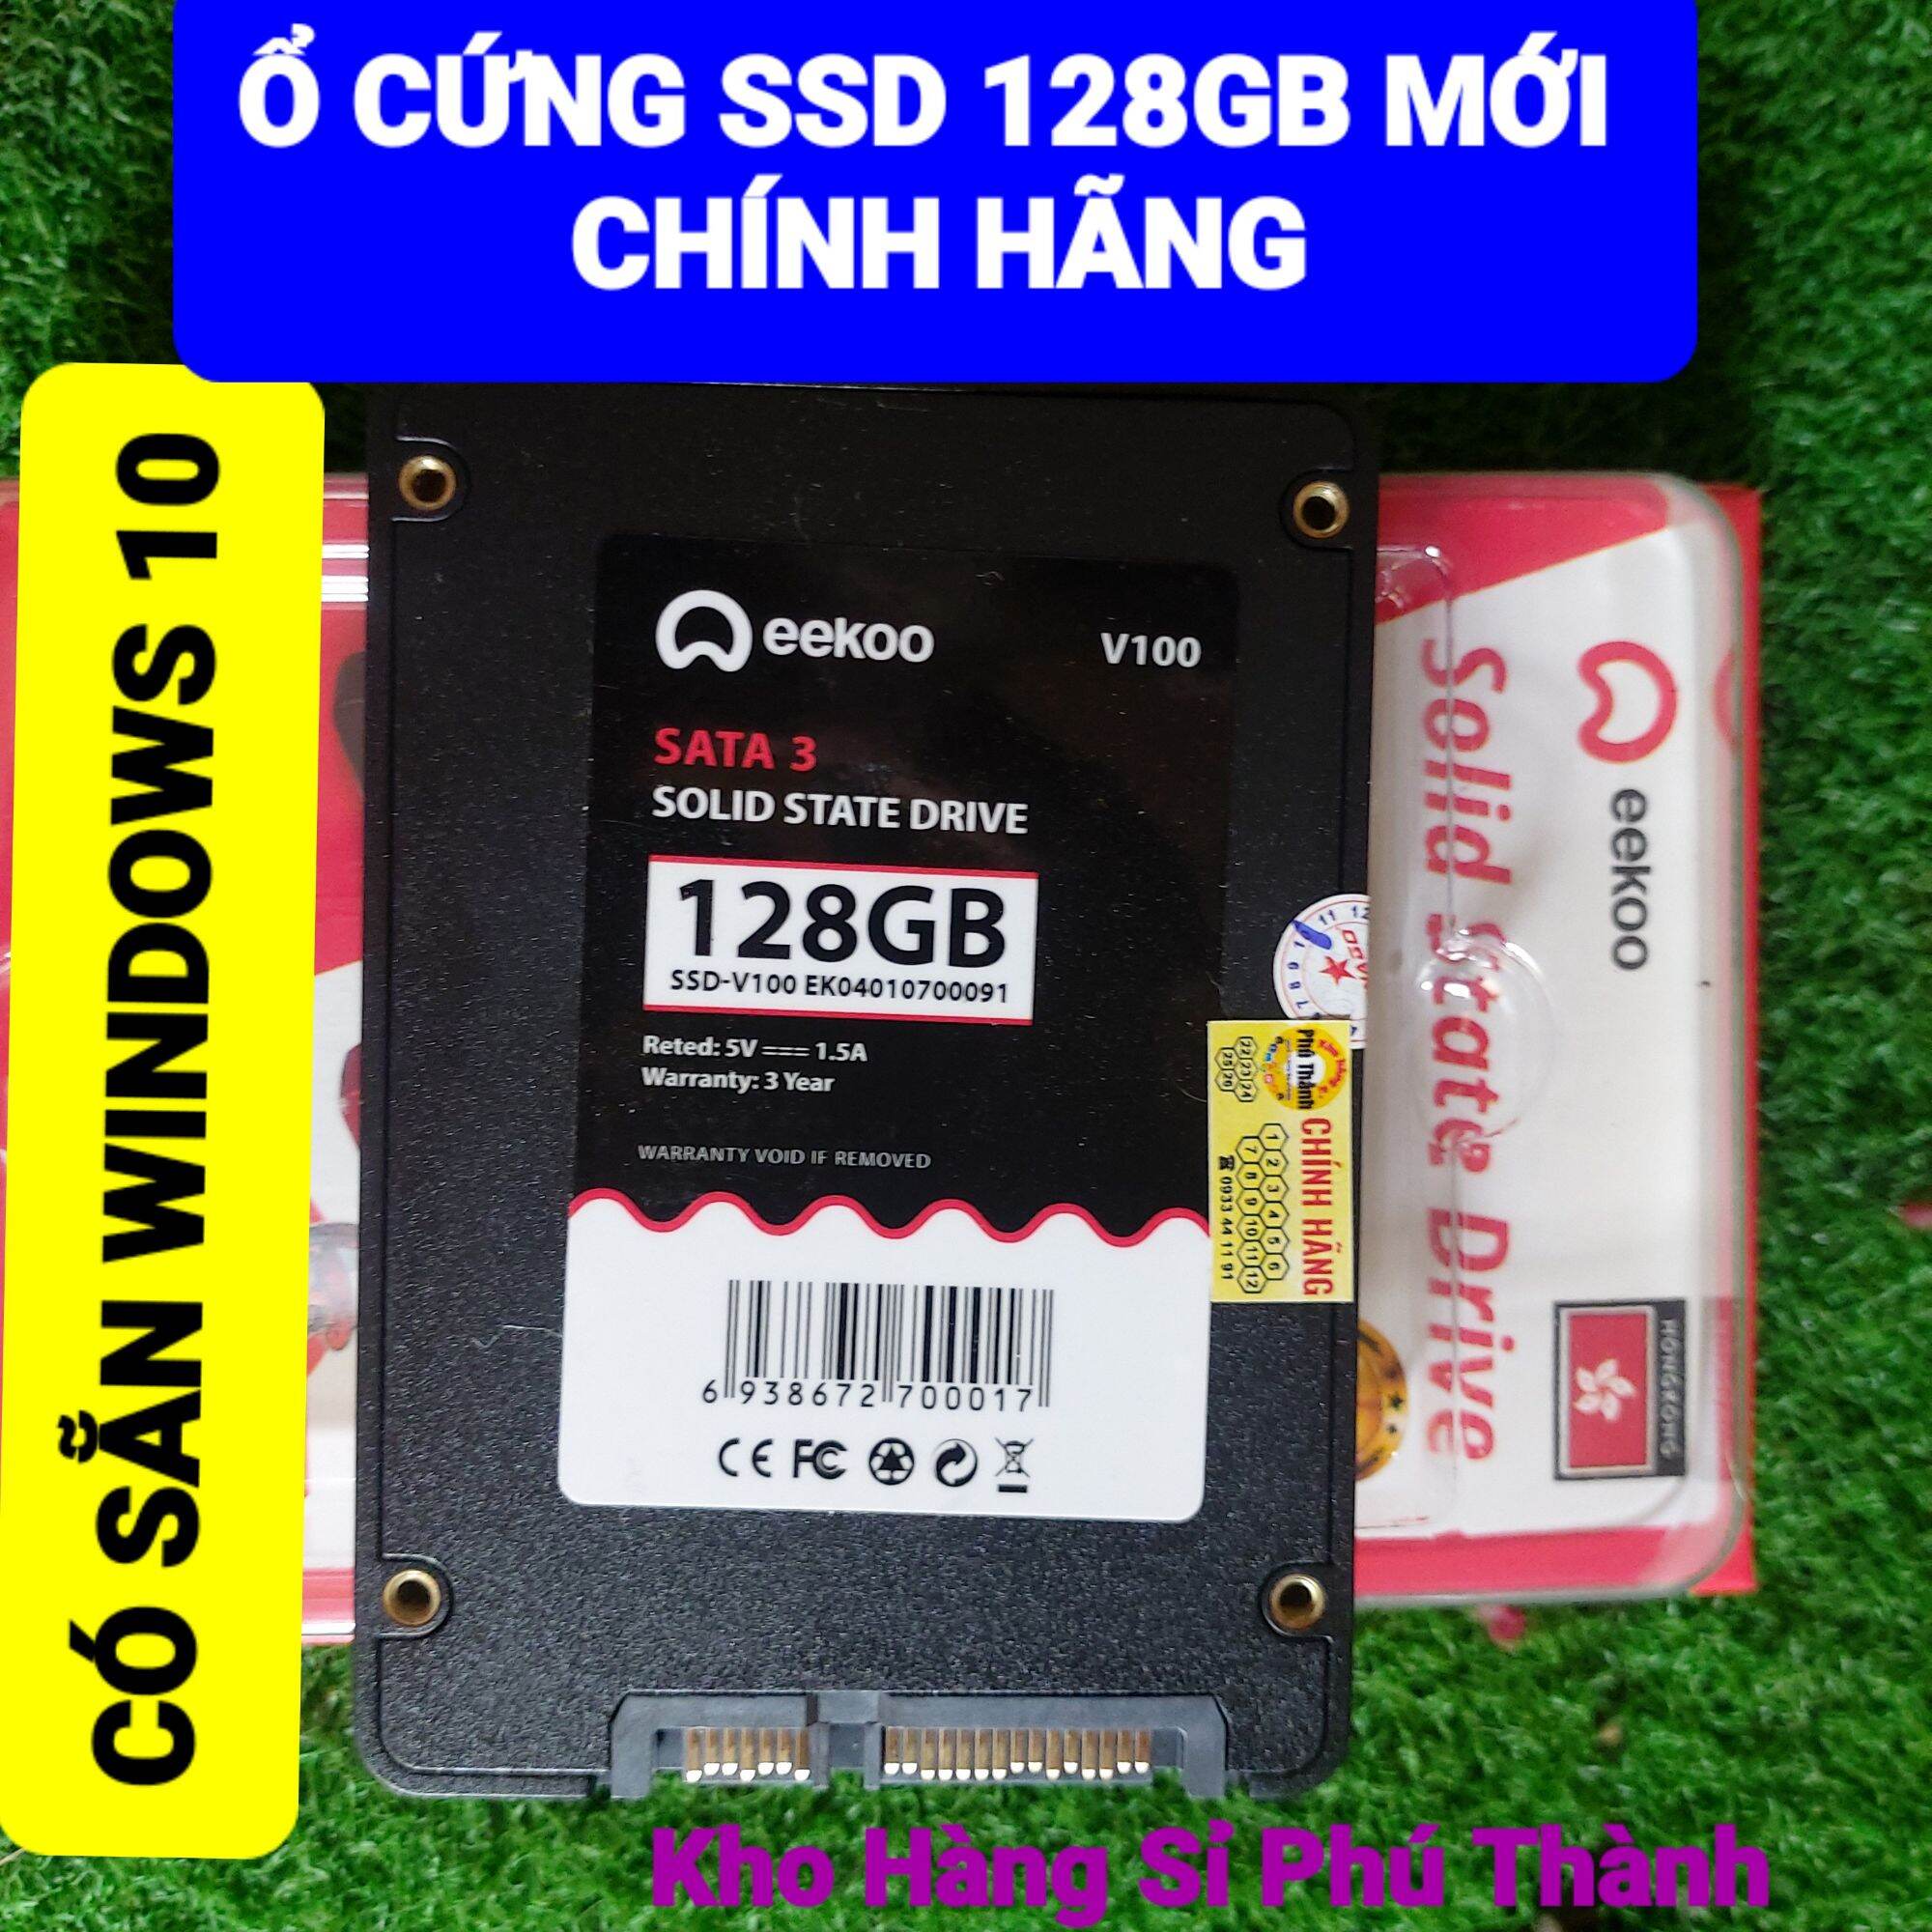 Ổ cứng SSD mới có sẵn WINDOWS 10 Eekoo 128 GB Bảo hành 3 năm chính hãng